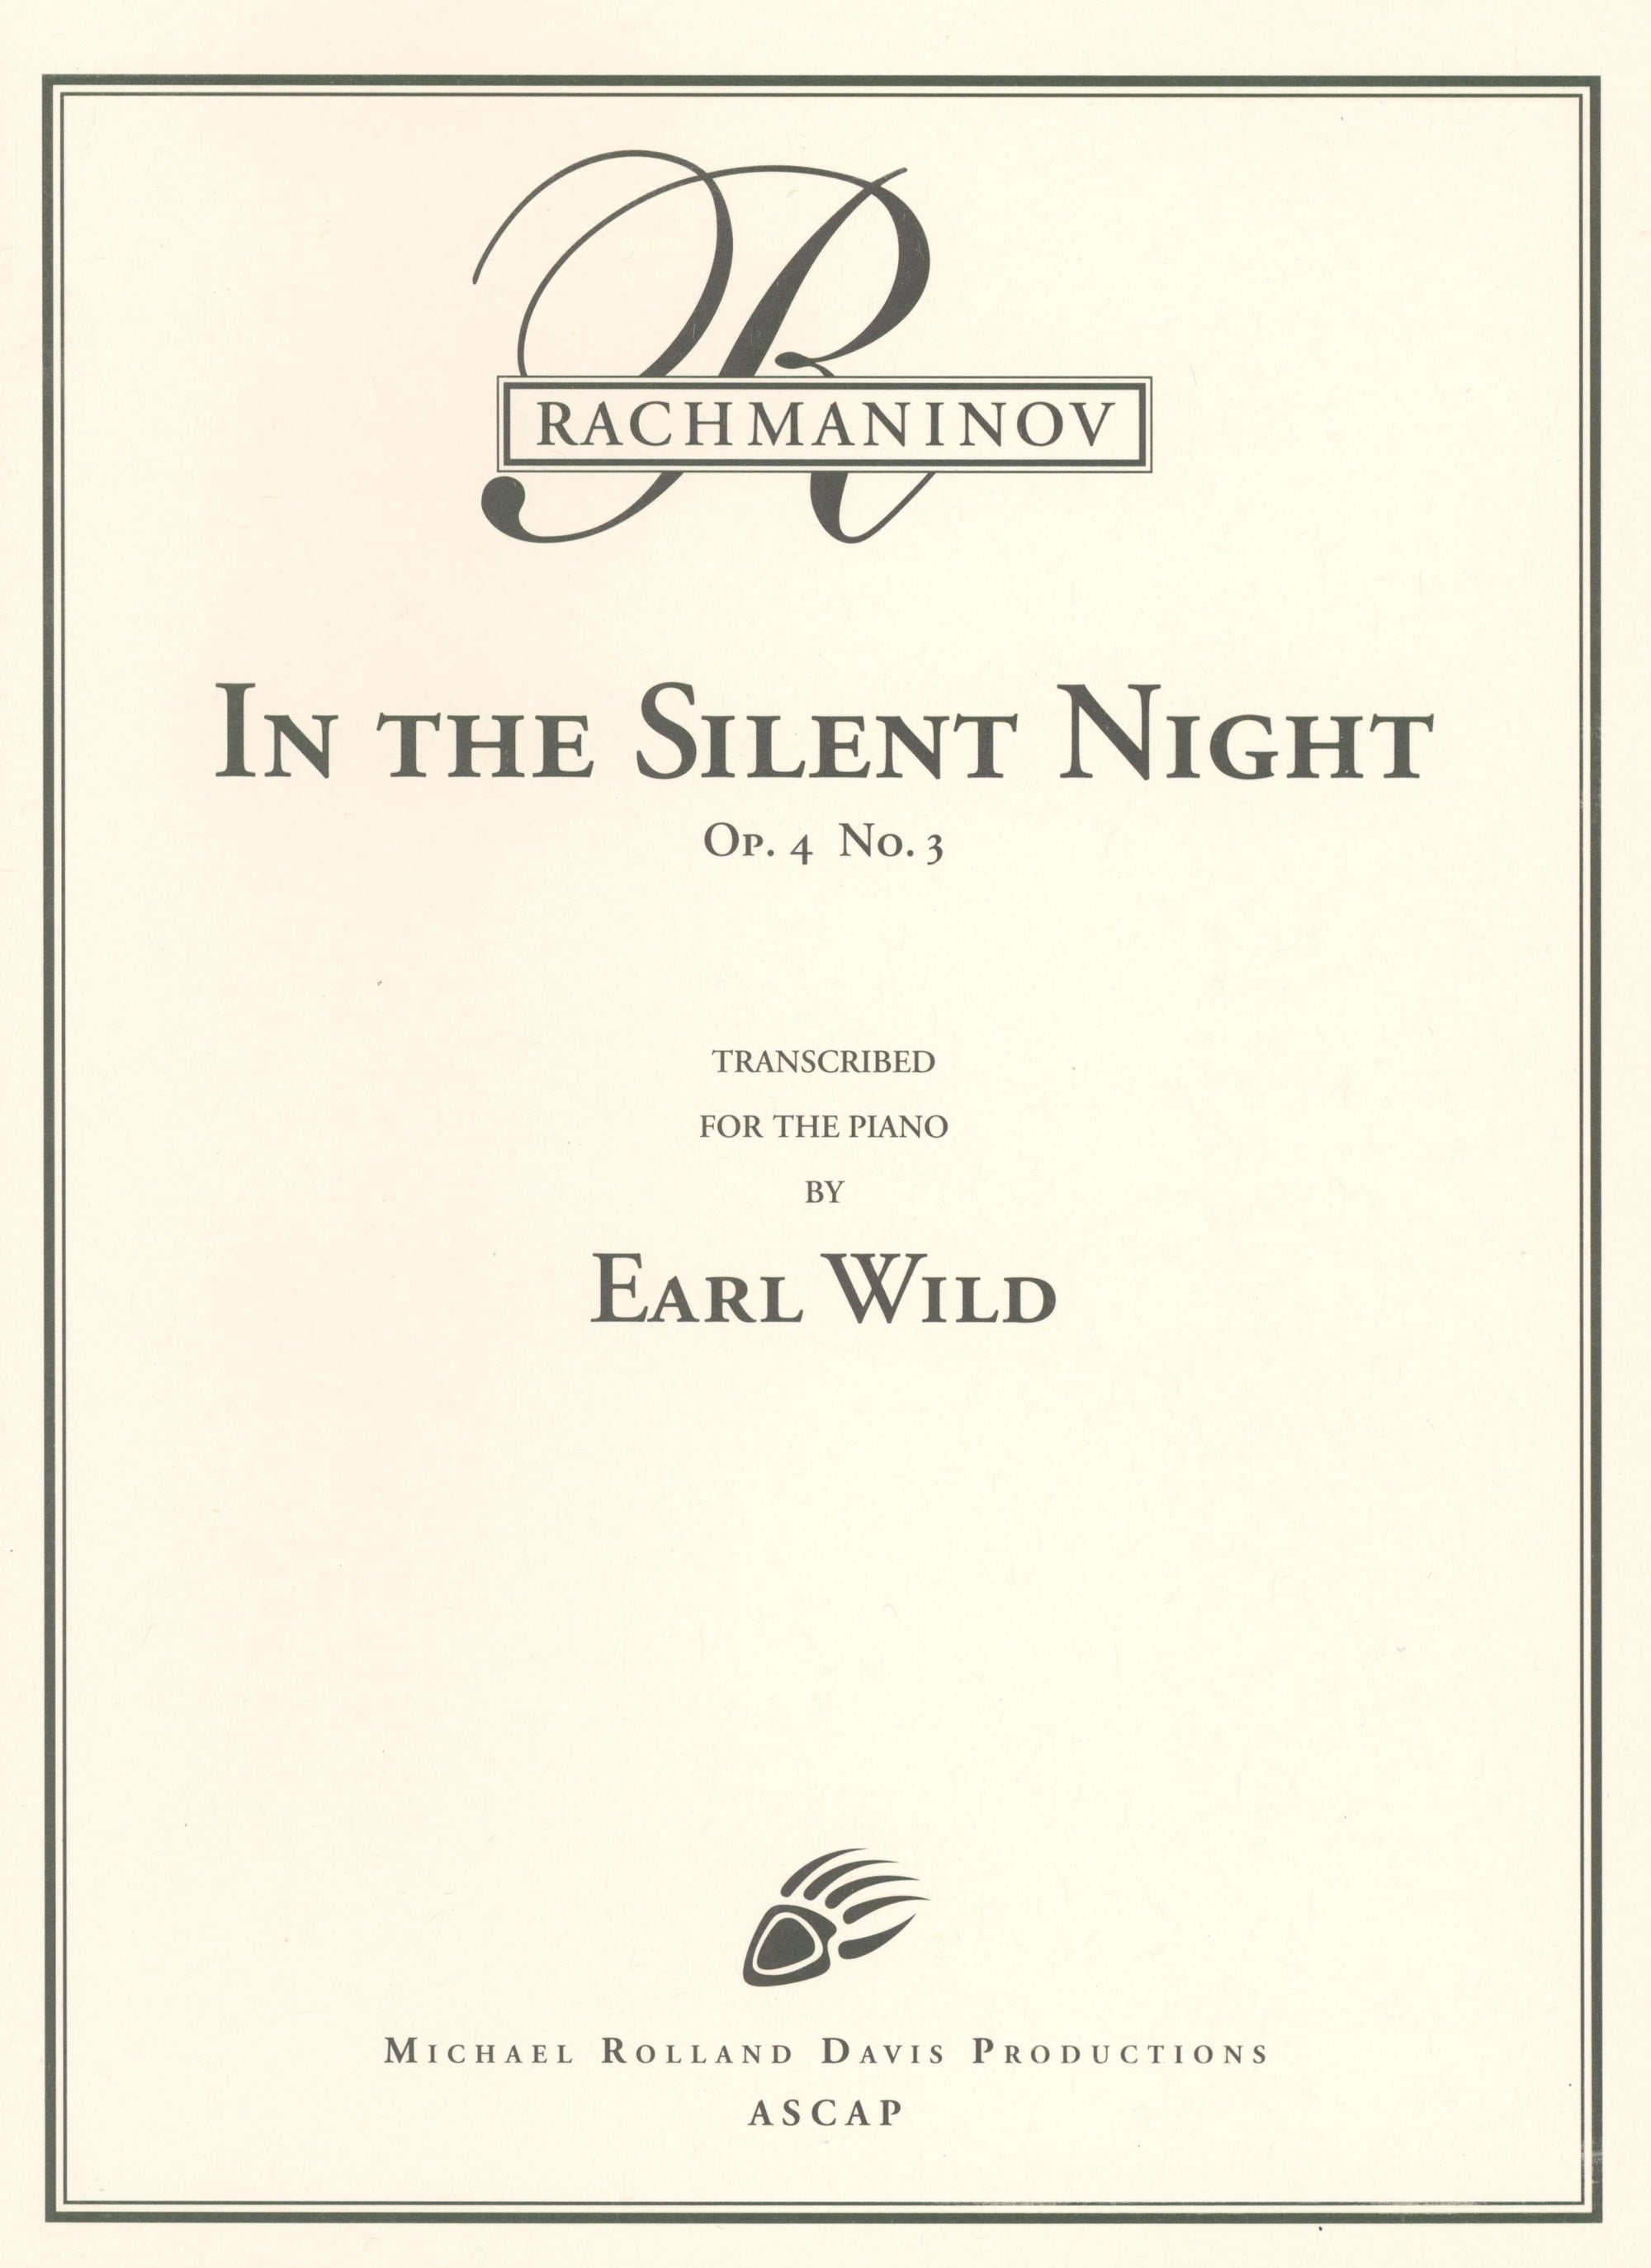 Rachmaninoff-Wild: In the Silent Night, Op. 4, No. 3